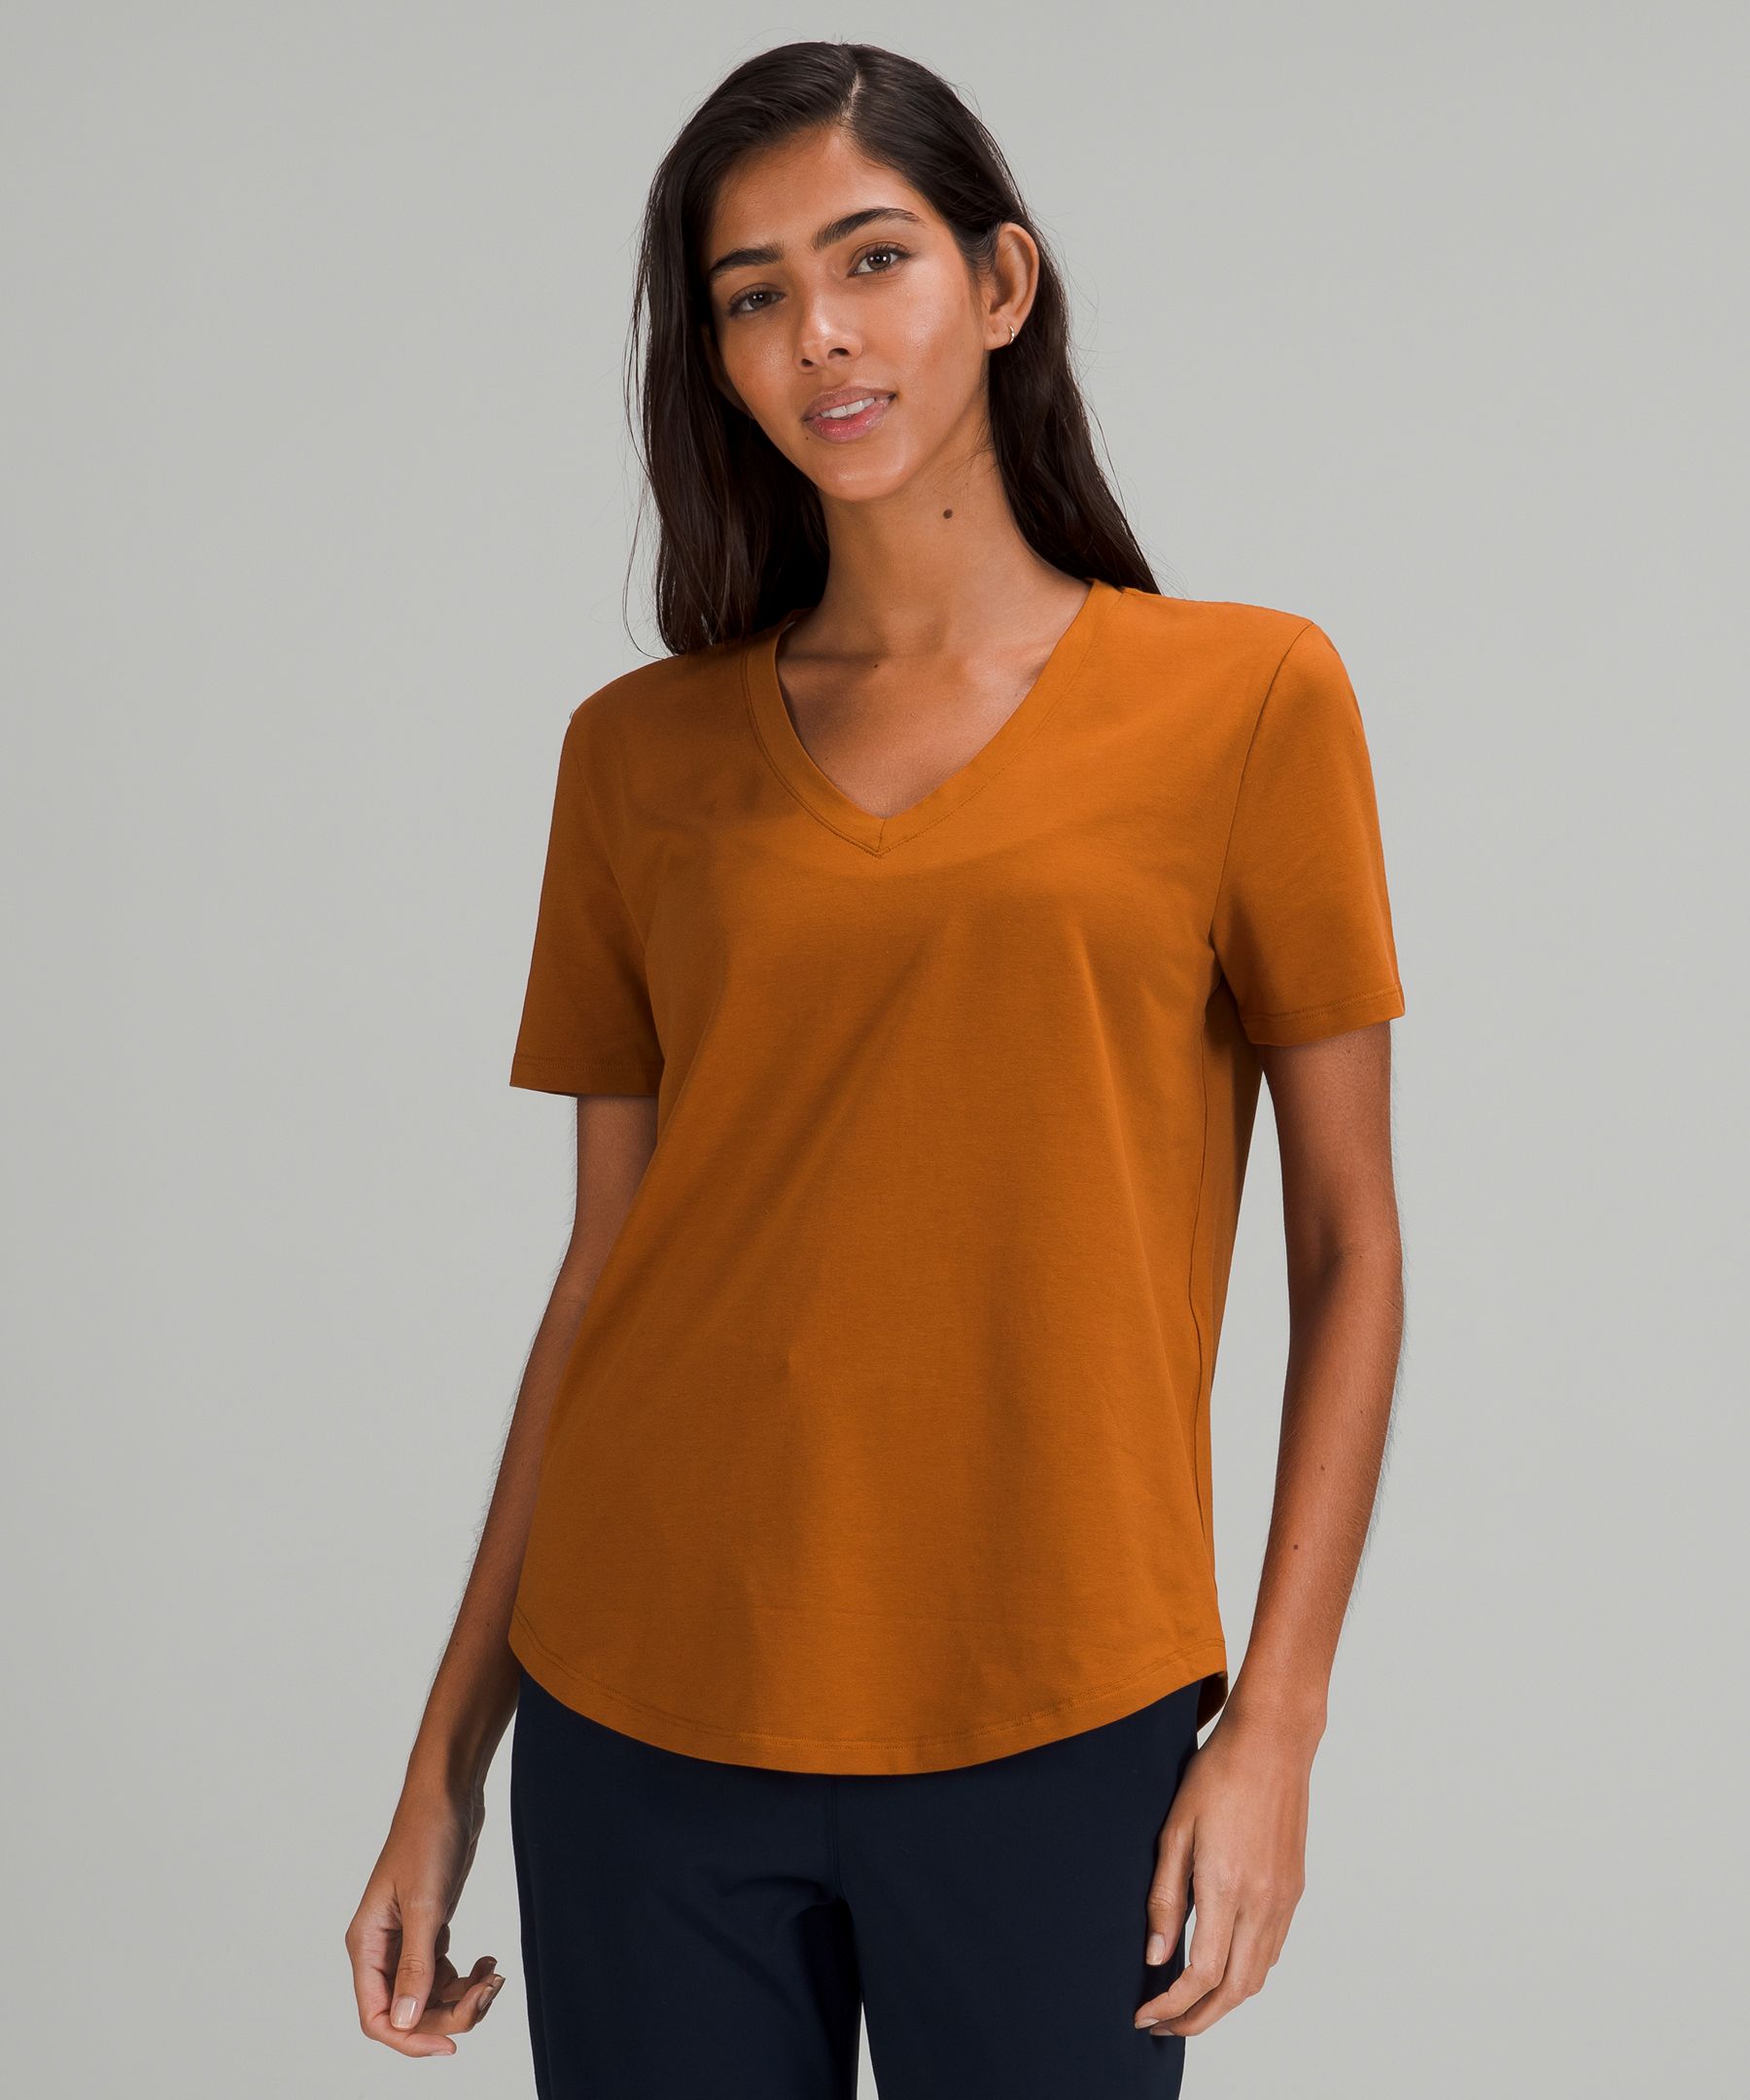 Lululemon Love V-neck T-shirt In Orange